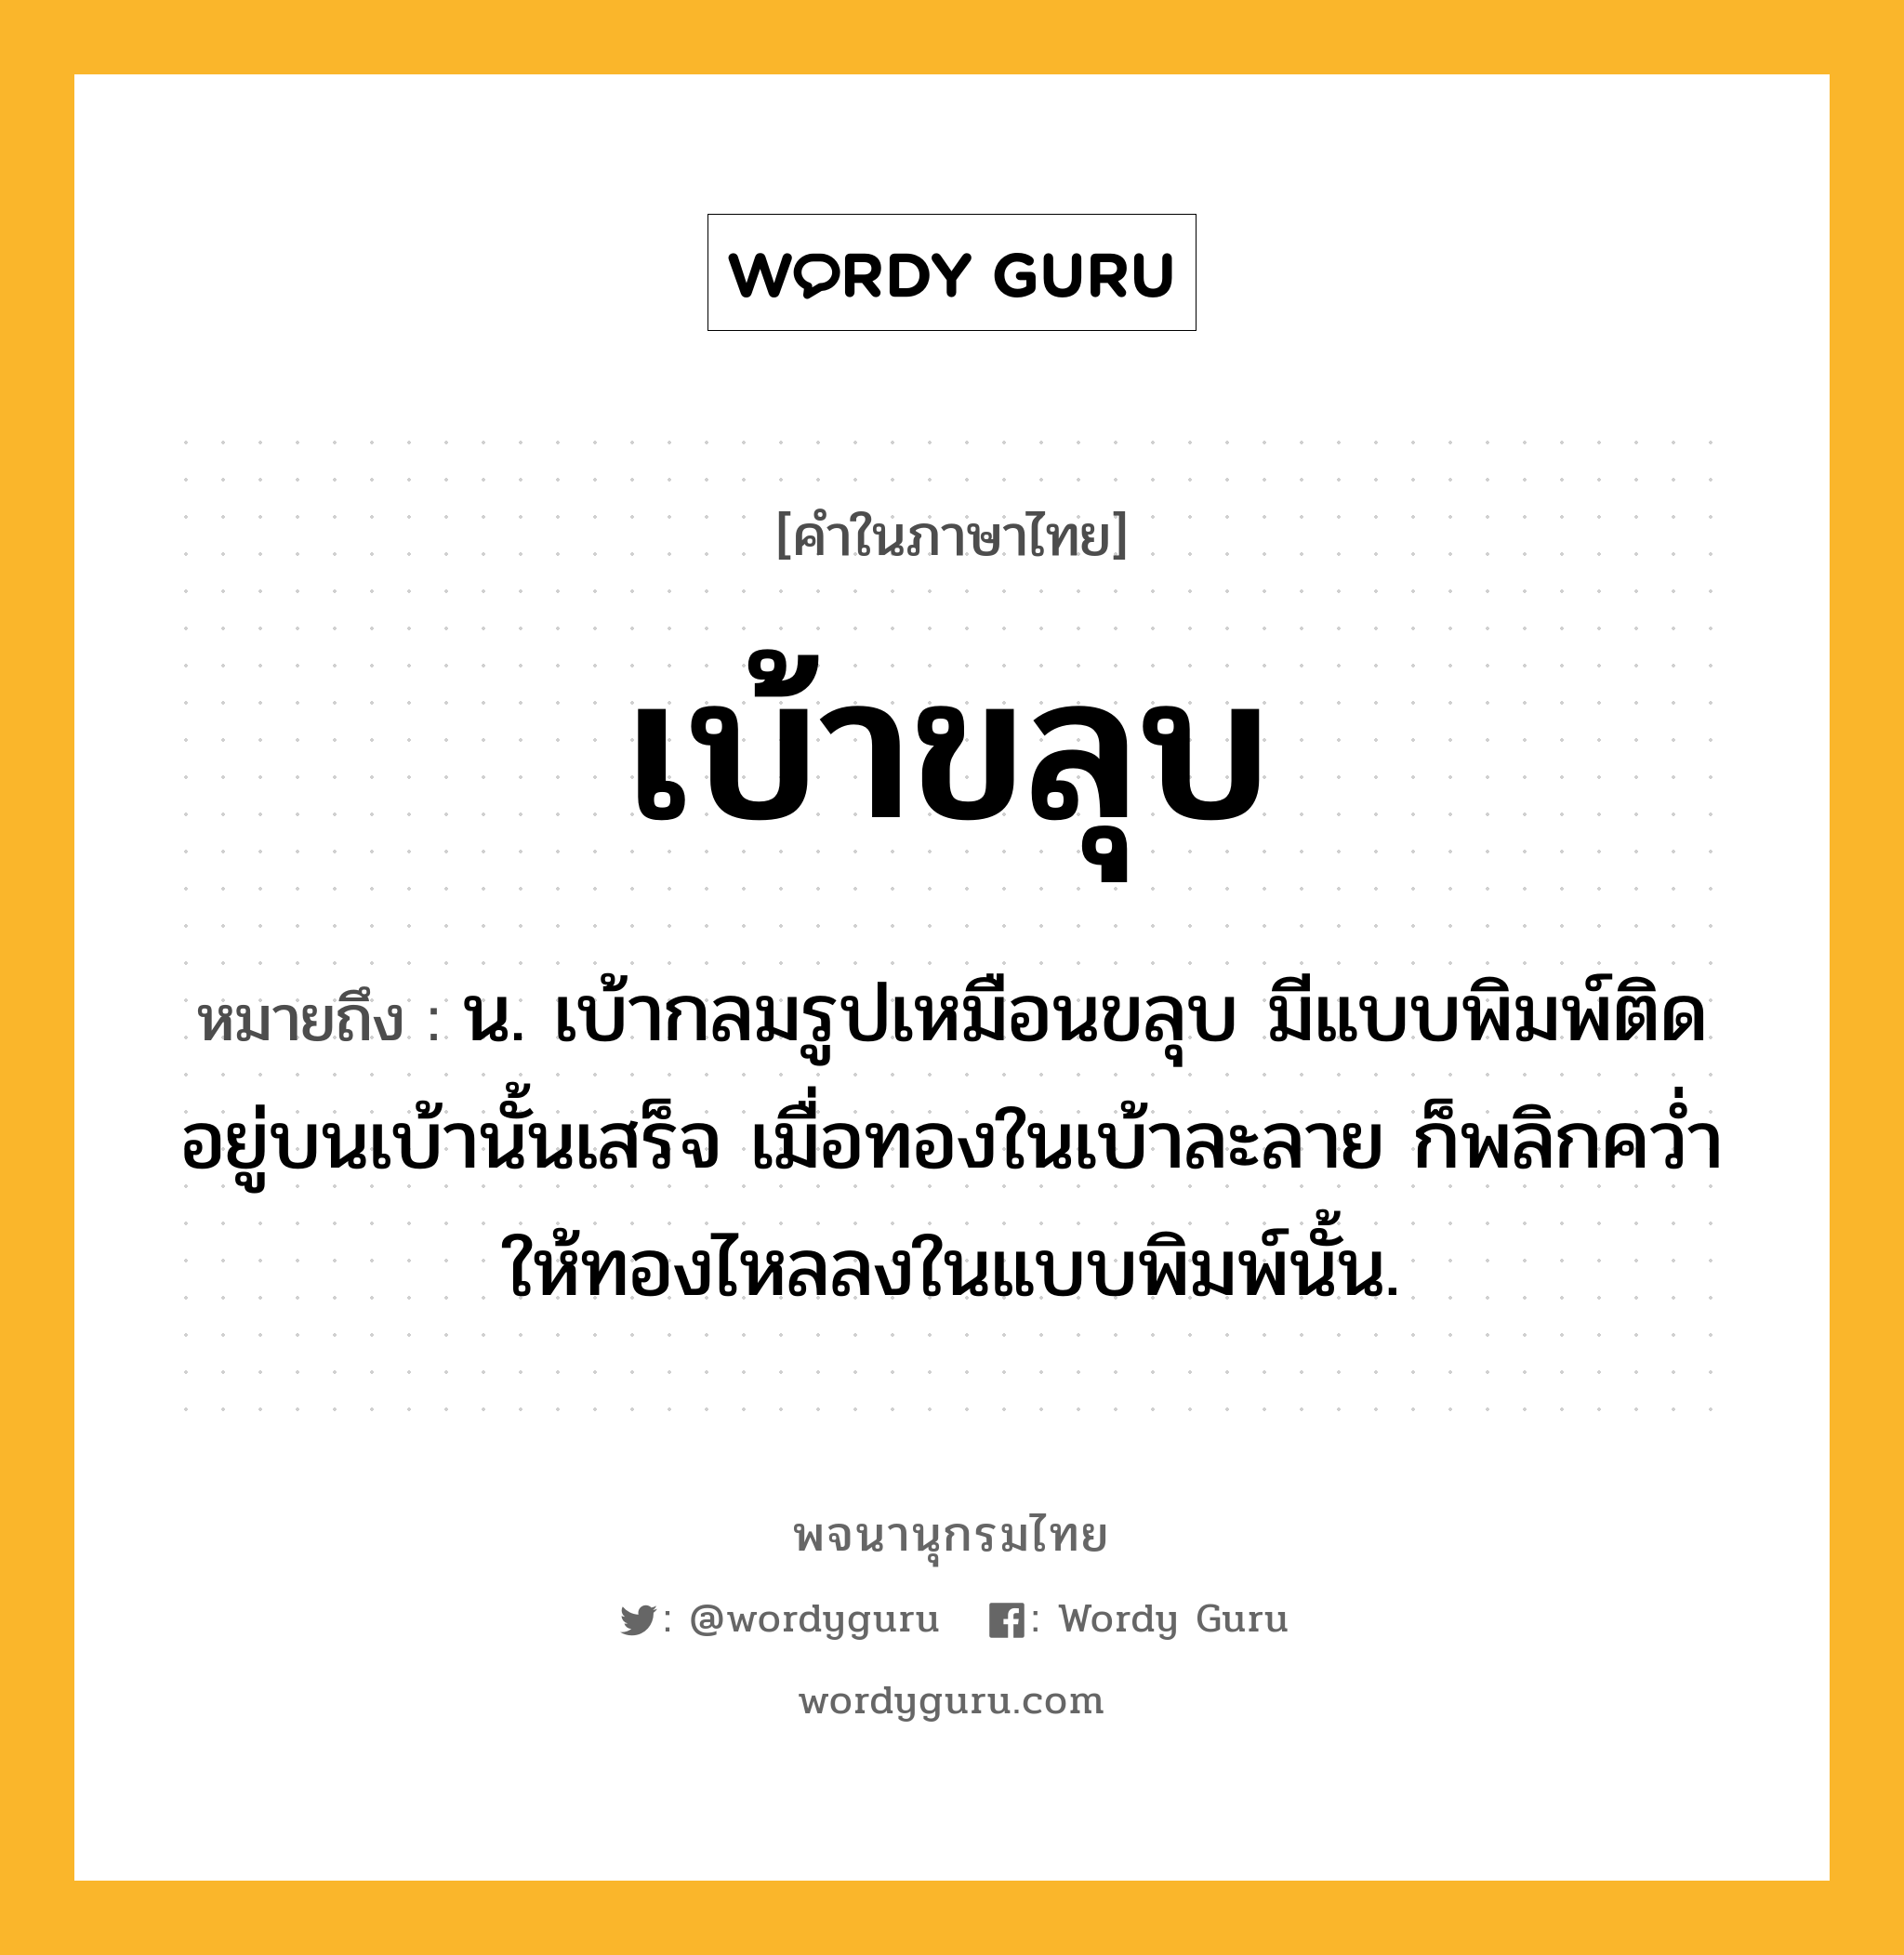 เบ้าขลุบ ความหมาย หมายถึงอะไร?, คำในภาษาไทย เบ้าขลุบ หมายถึง น. เบ้ากลมรูปเหมือนขลุบ มีแบบพิมพ์ติดอยู่บนเบ้านั้นเสร็จ เมื่อทองในเบ้าละลาย ก็พลิกควํ่าให้ทองไหลลงในแบบพิมพ์นั้น.